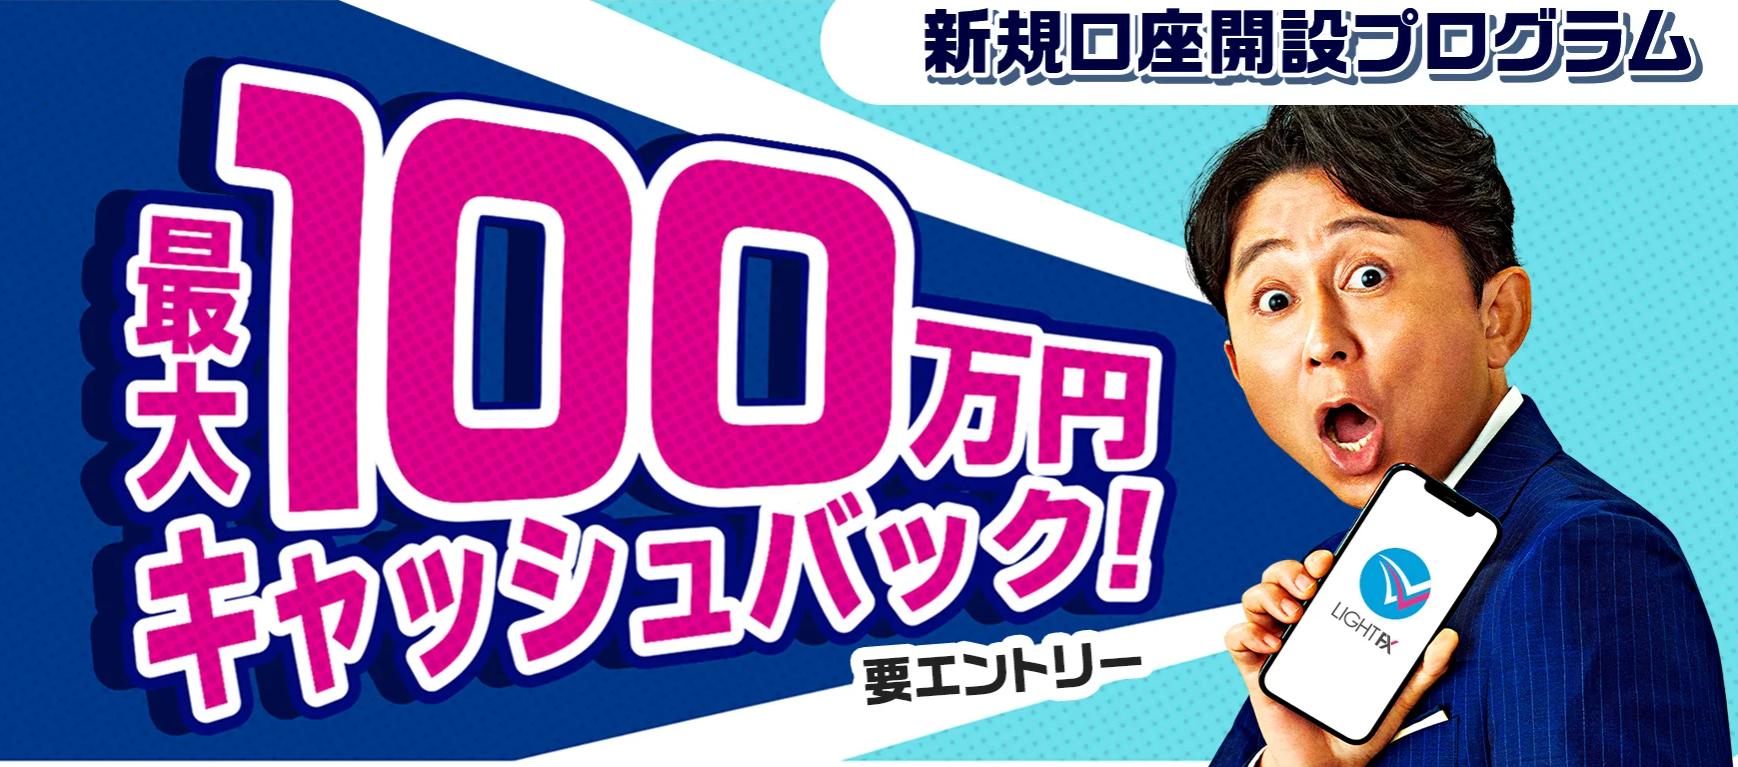 LIGHT FX100万円キャッシュバックキャンペーン